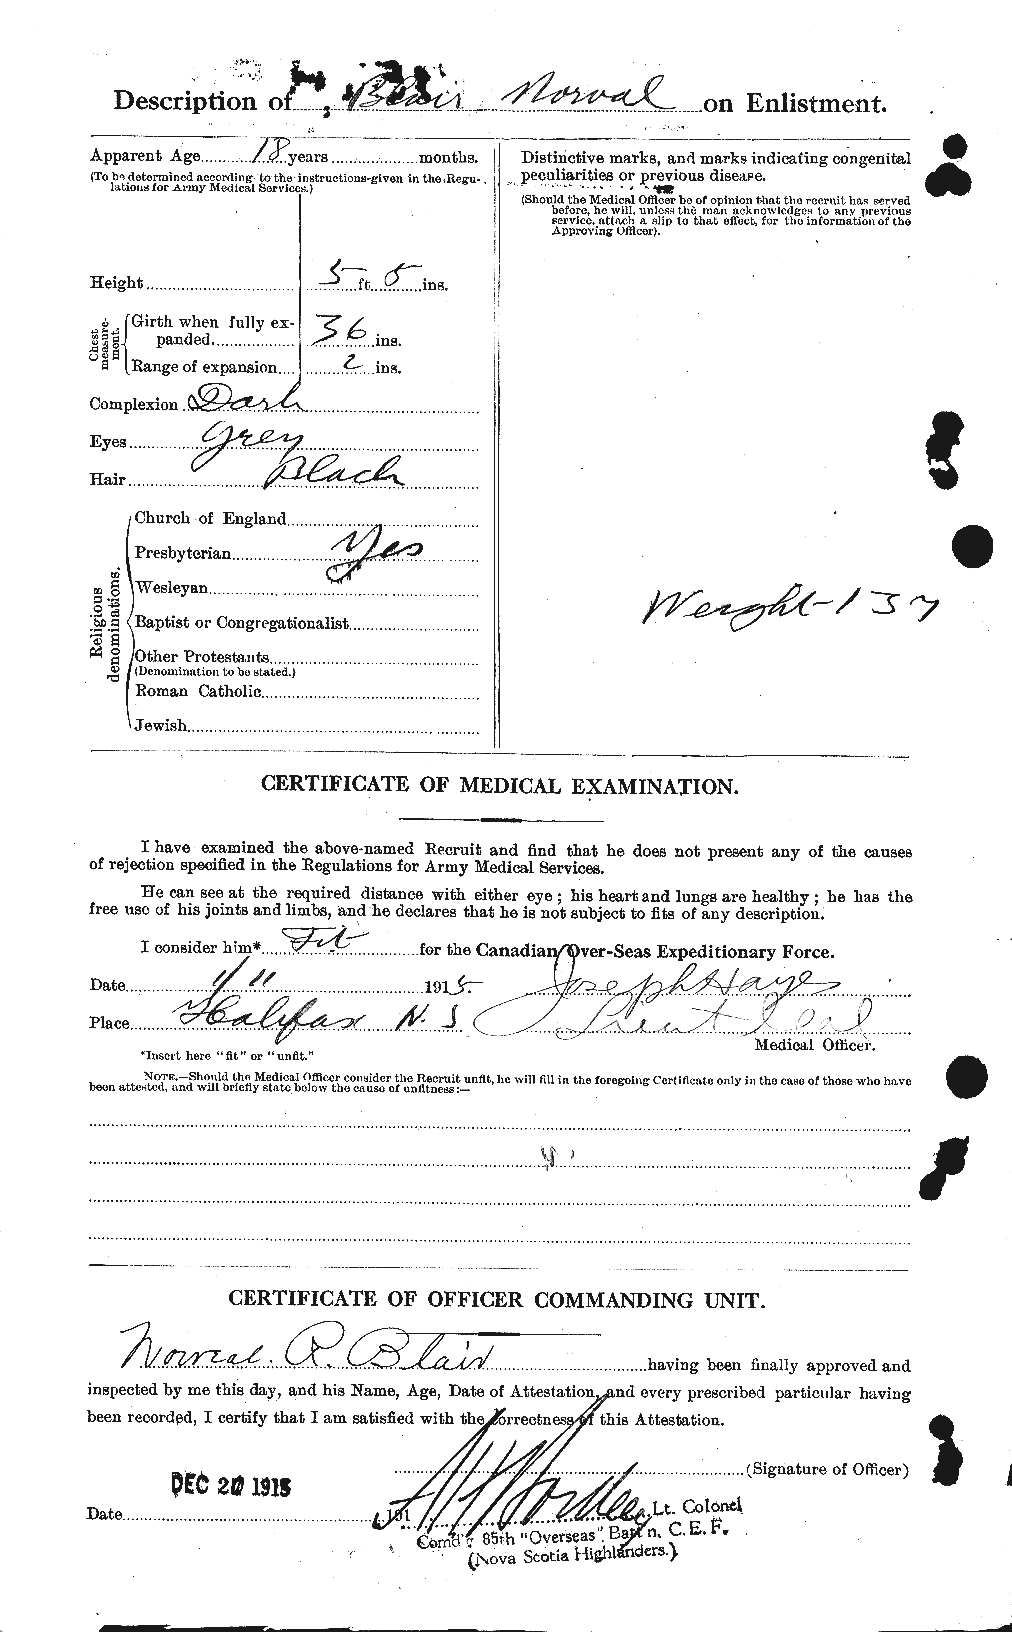 Dossiers du Personnel de la Première Guerre mondiale - CEC 243120b